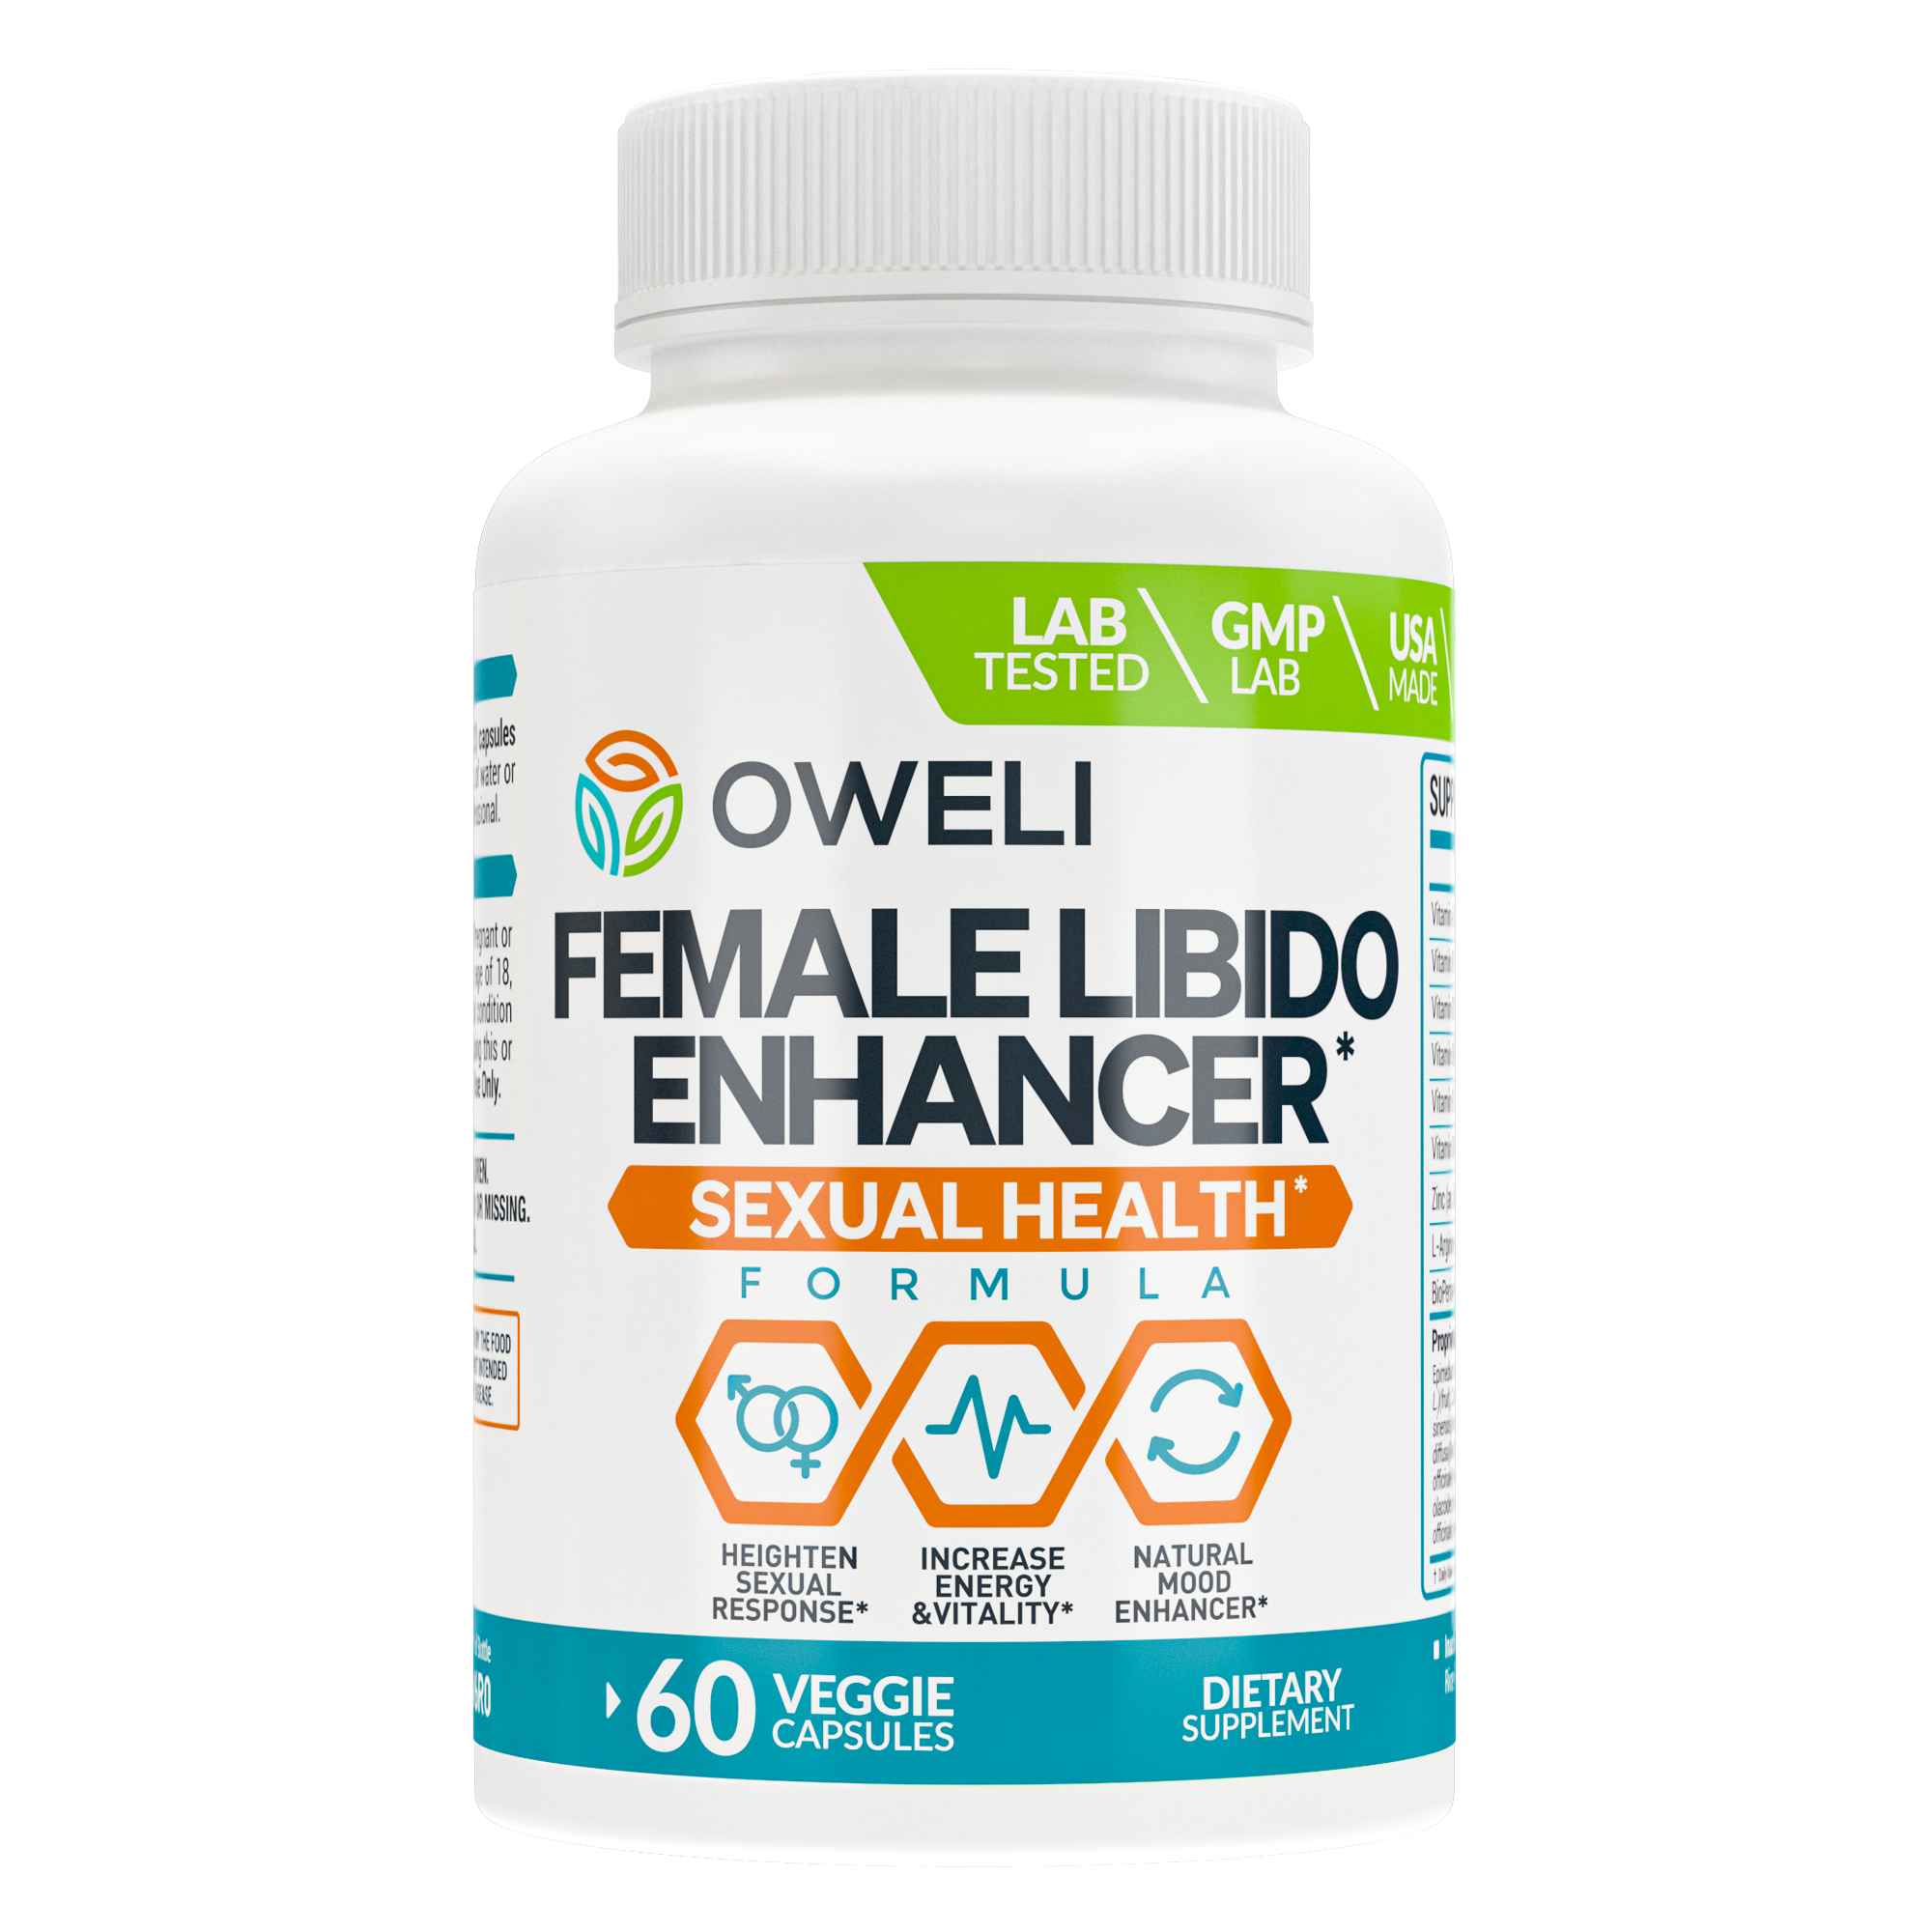 Oweli Female Libido Enhancer